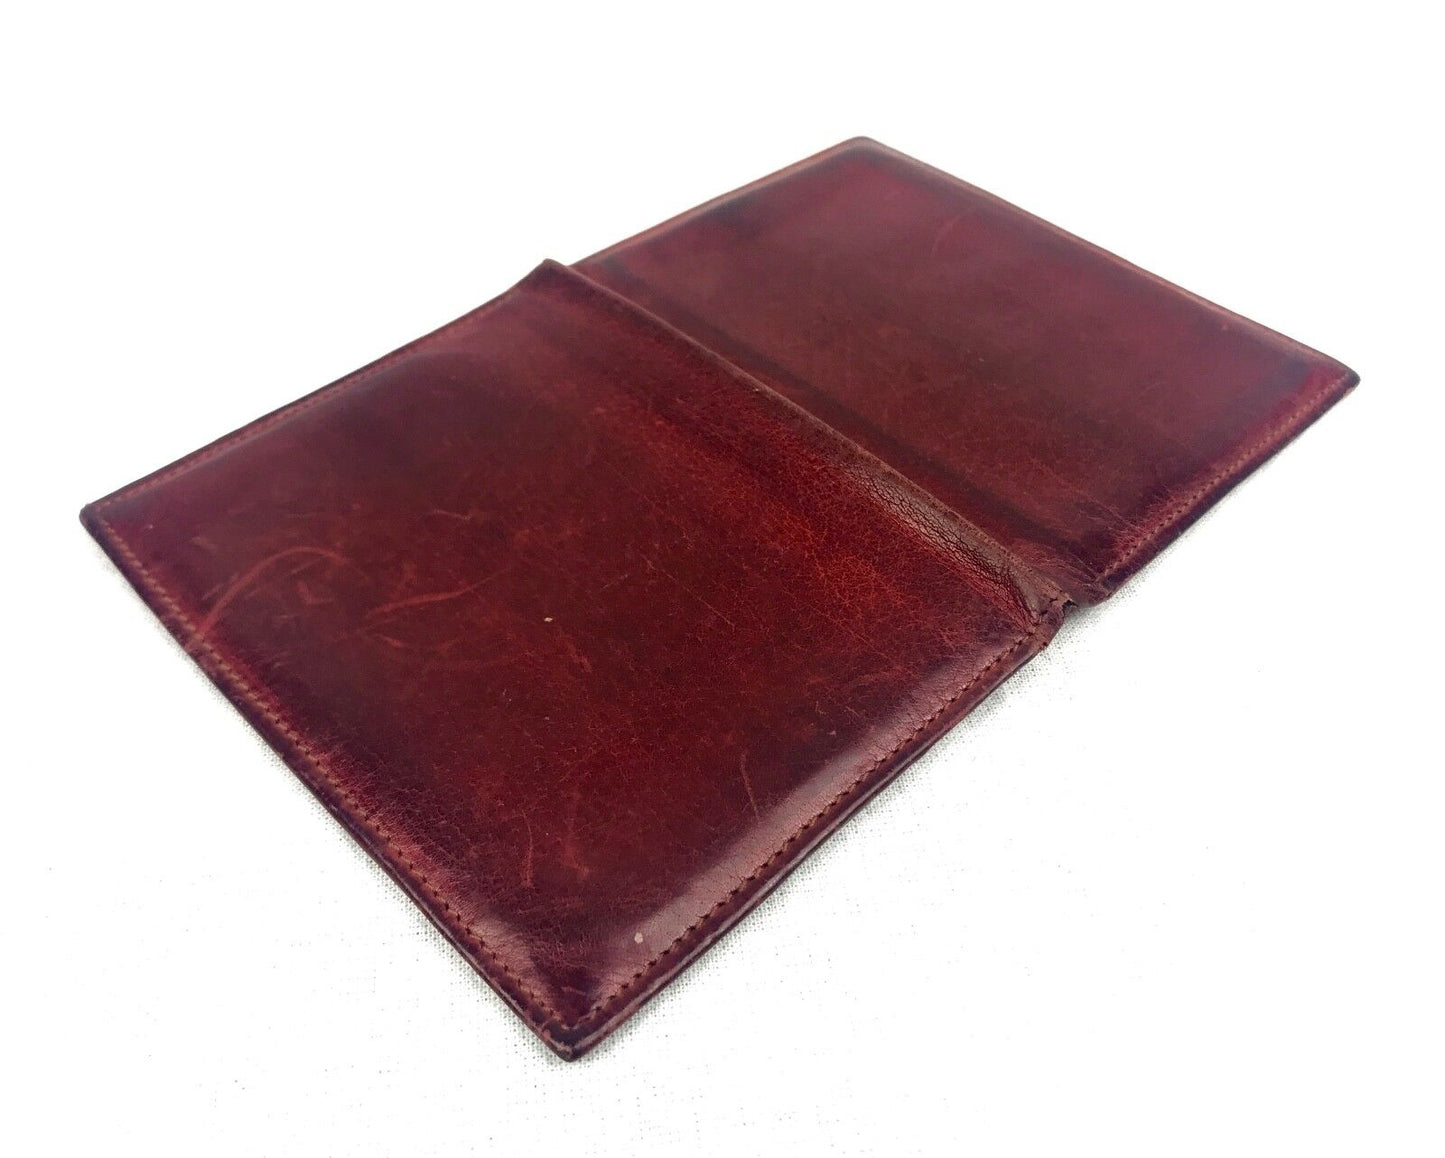 Vintage Gentleman's Leather Wallet Marked 'Regency Kid" / London / Red